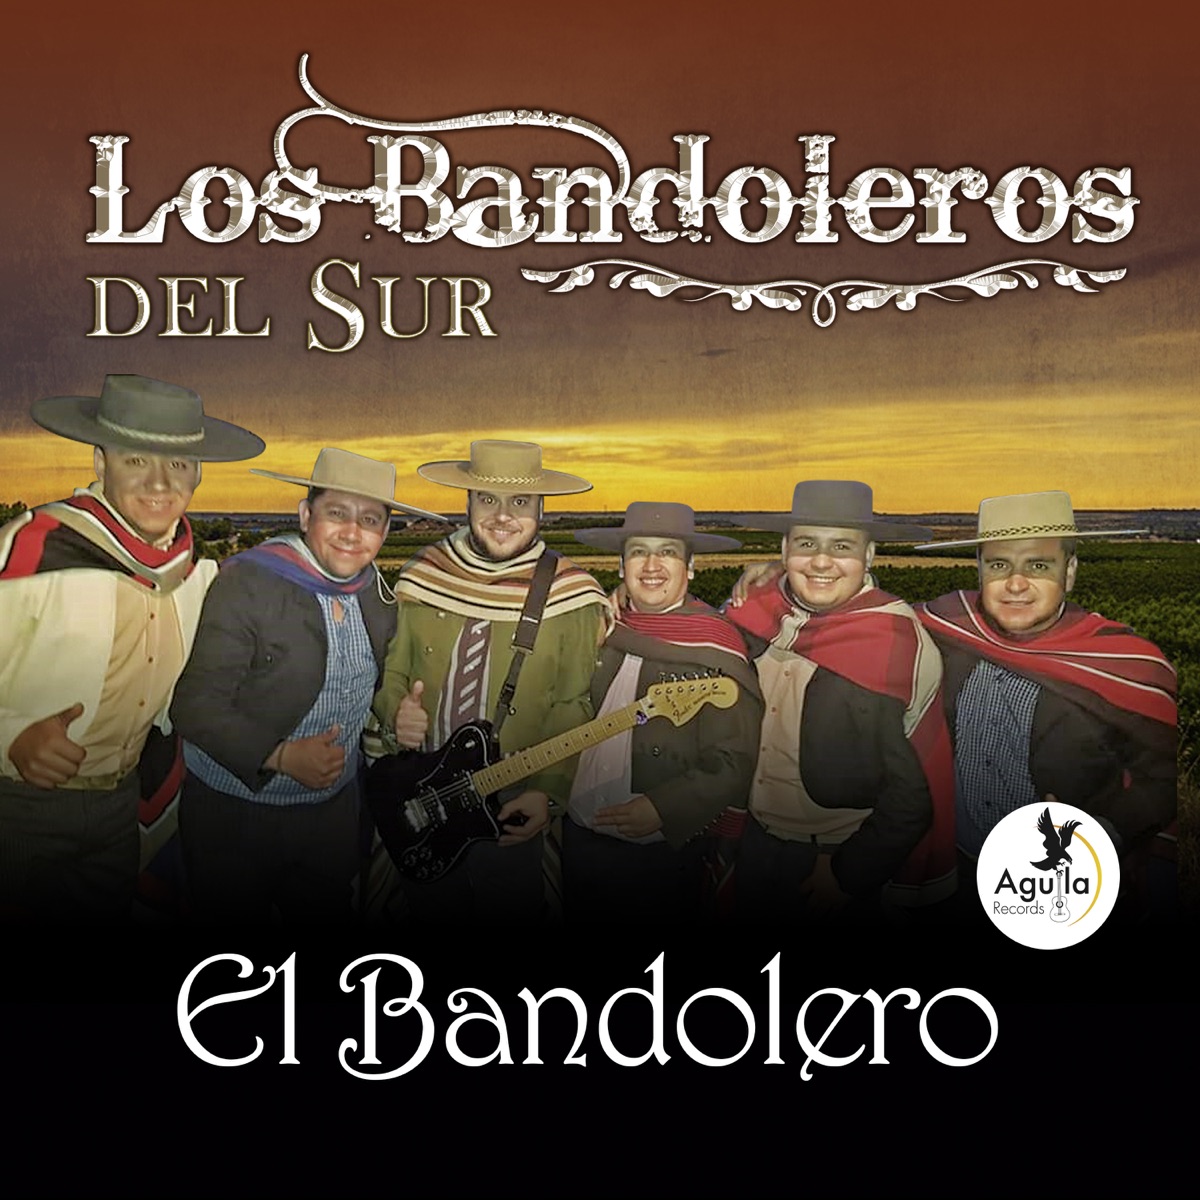 El Bandolero by Los Bandoleros Del Sur on Apple Music